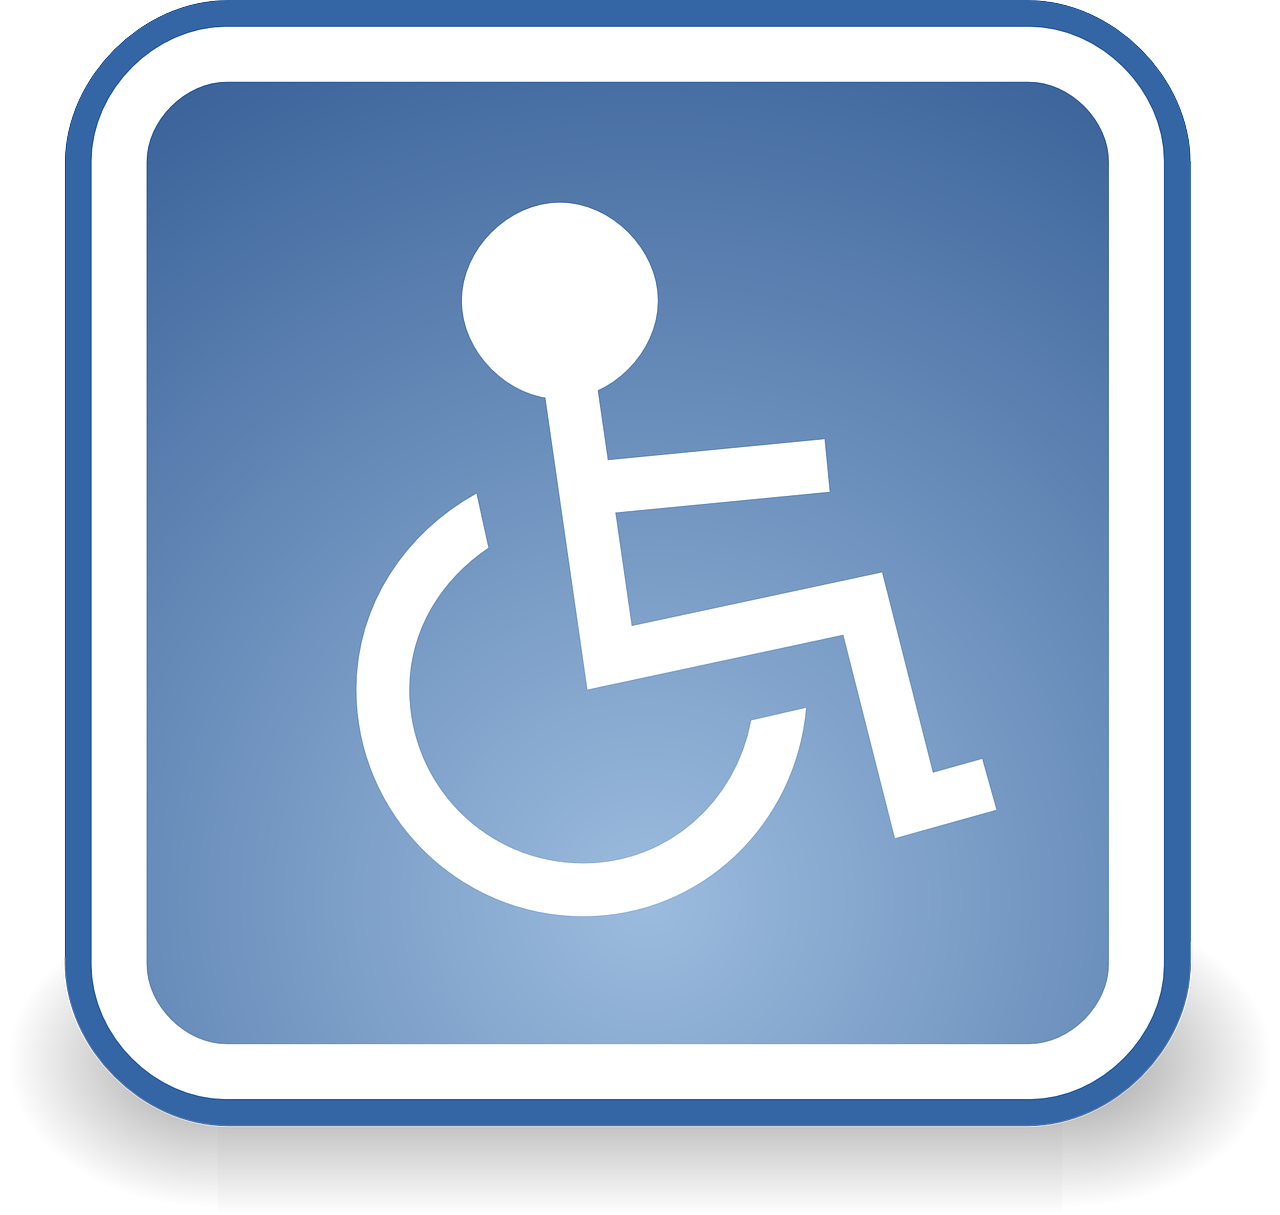 Woonlocatie, De Roskam 13 Gemiva - SVG Groep kosten instellingen gehandicaptenzorg verstandelijk gehandicapten